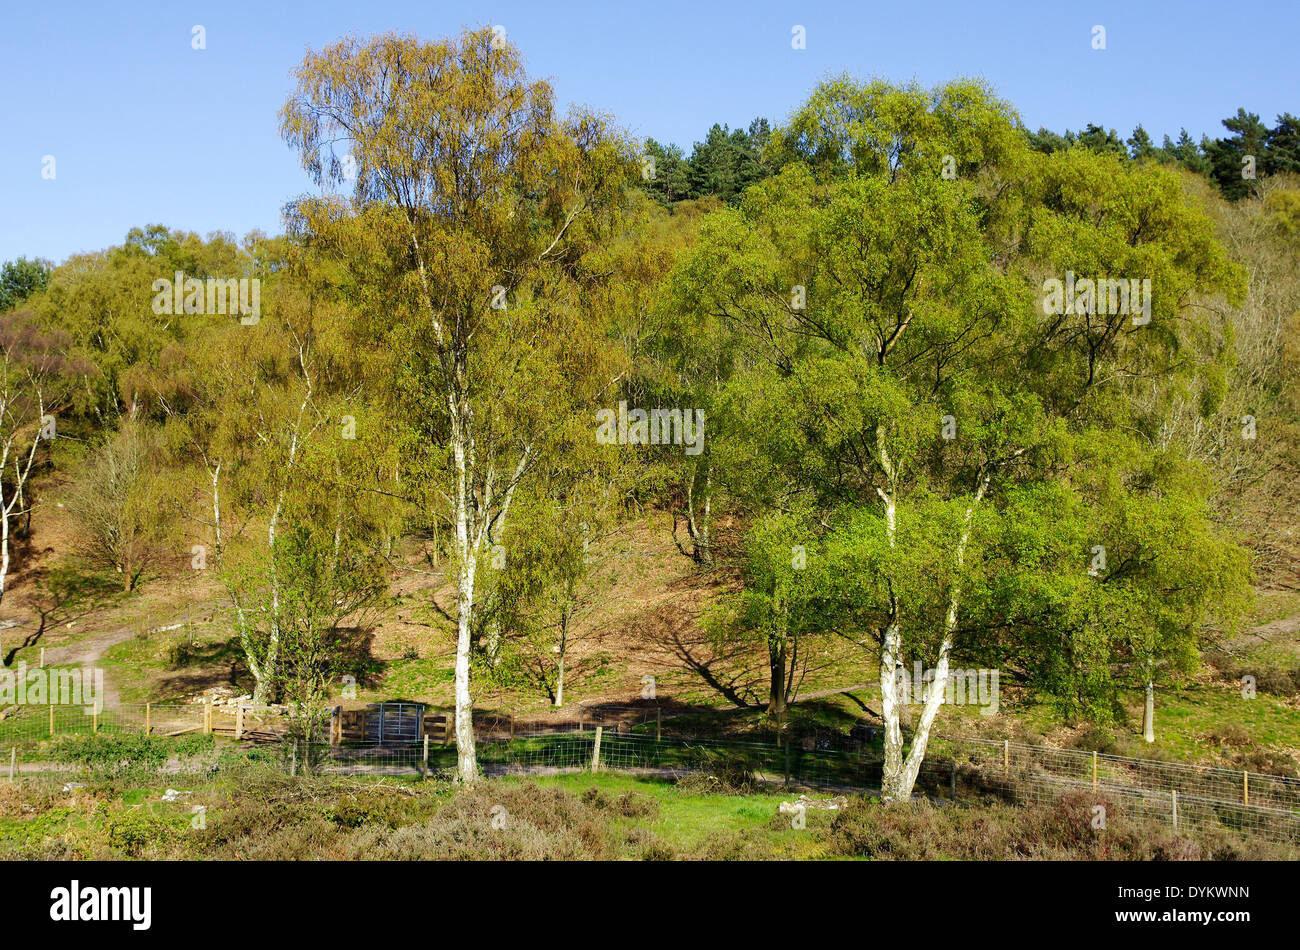 Bois de bouleau verruqueux Betula pendula ( ) au parc forestier de Kingsford, Worcestershire, Angleterre, RU au printemps Banque D'Images